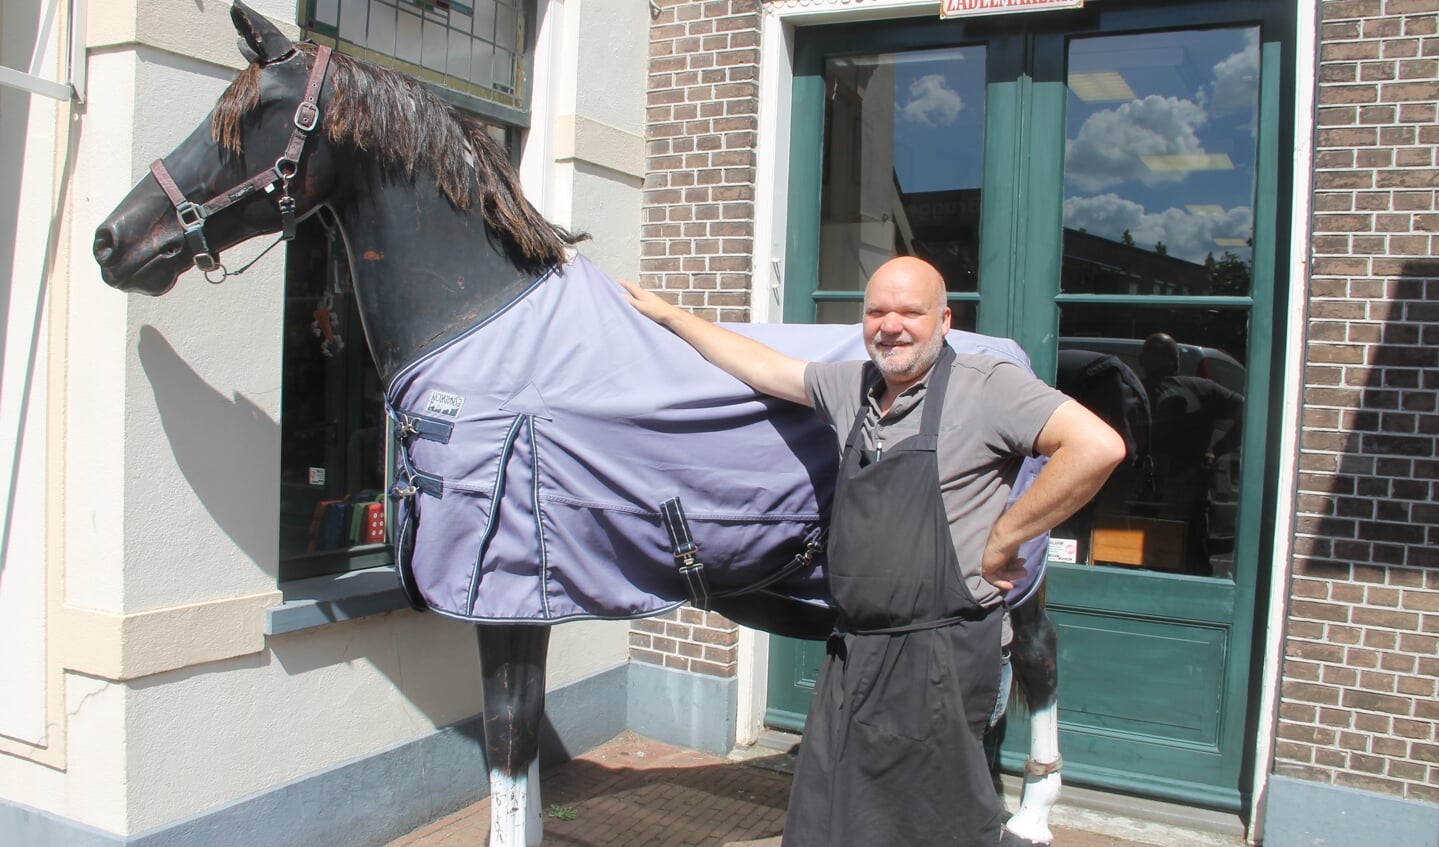 Zadelmaker Bert Wentink met het paard dat al weer sinds 1995 voor zijn werkplaats staat. Foto Lineke Voltman

